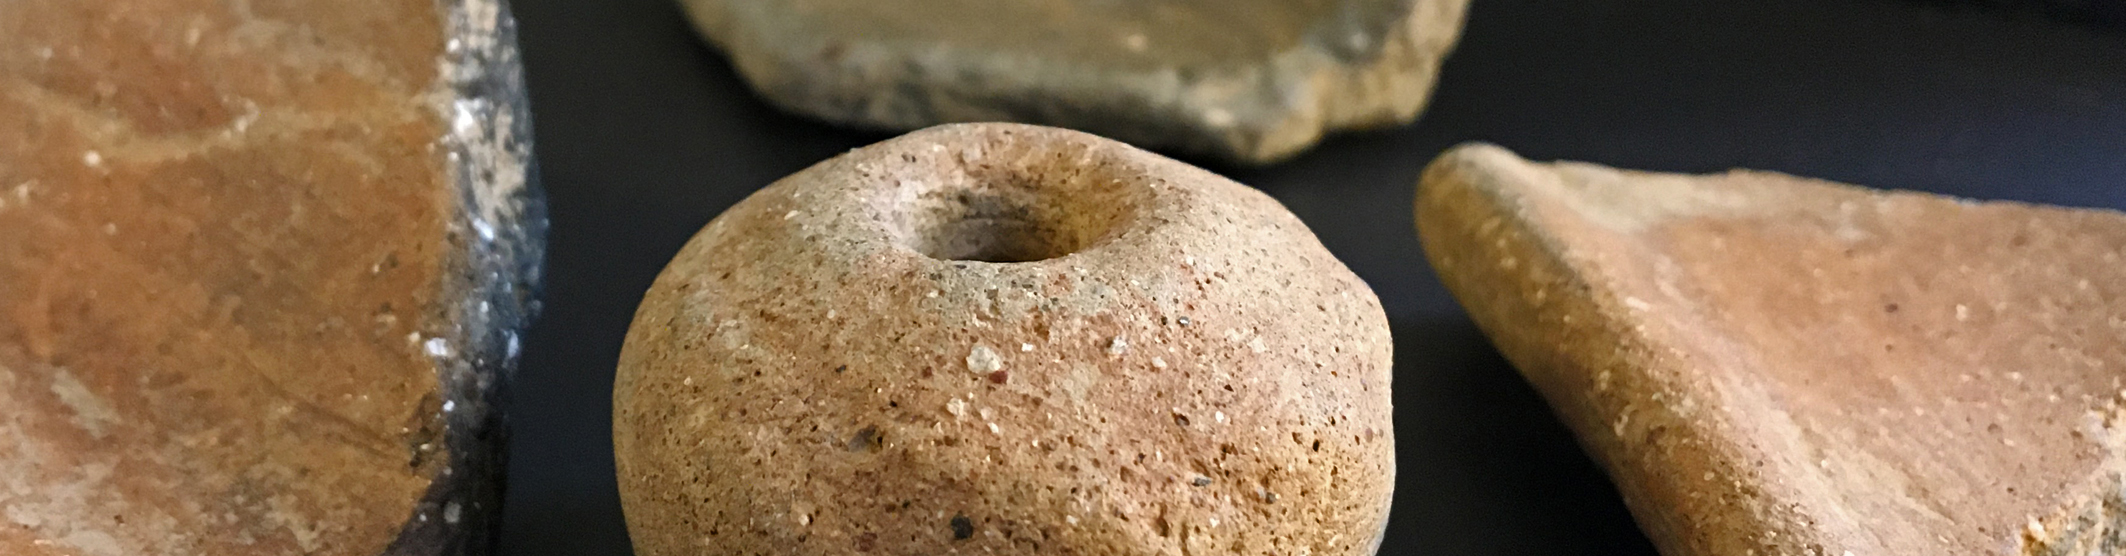 Keramikfunde aus der Eisenzeit